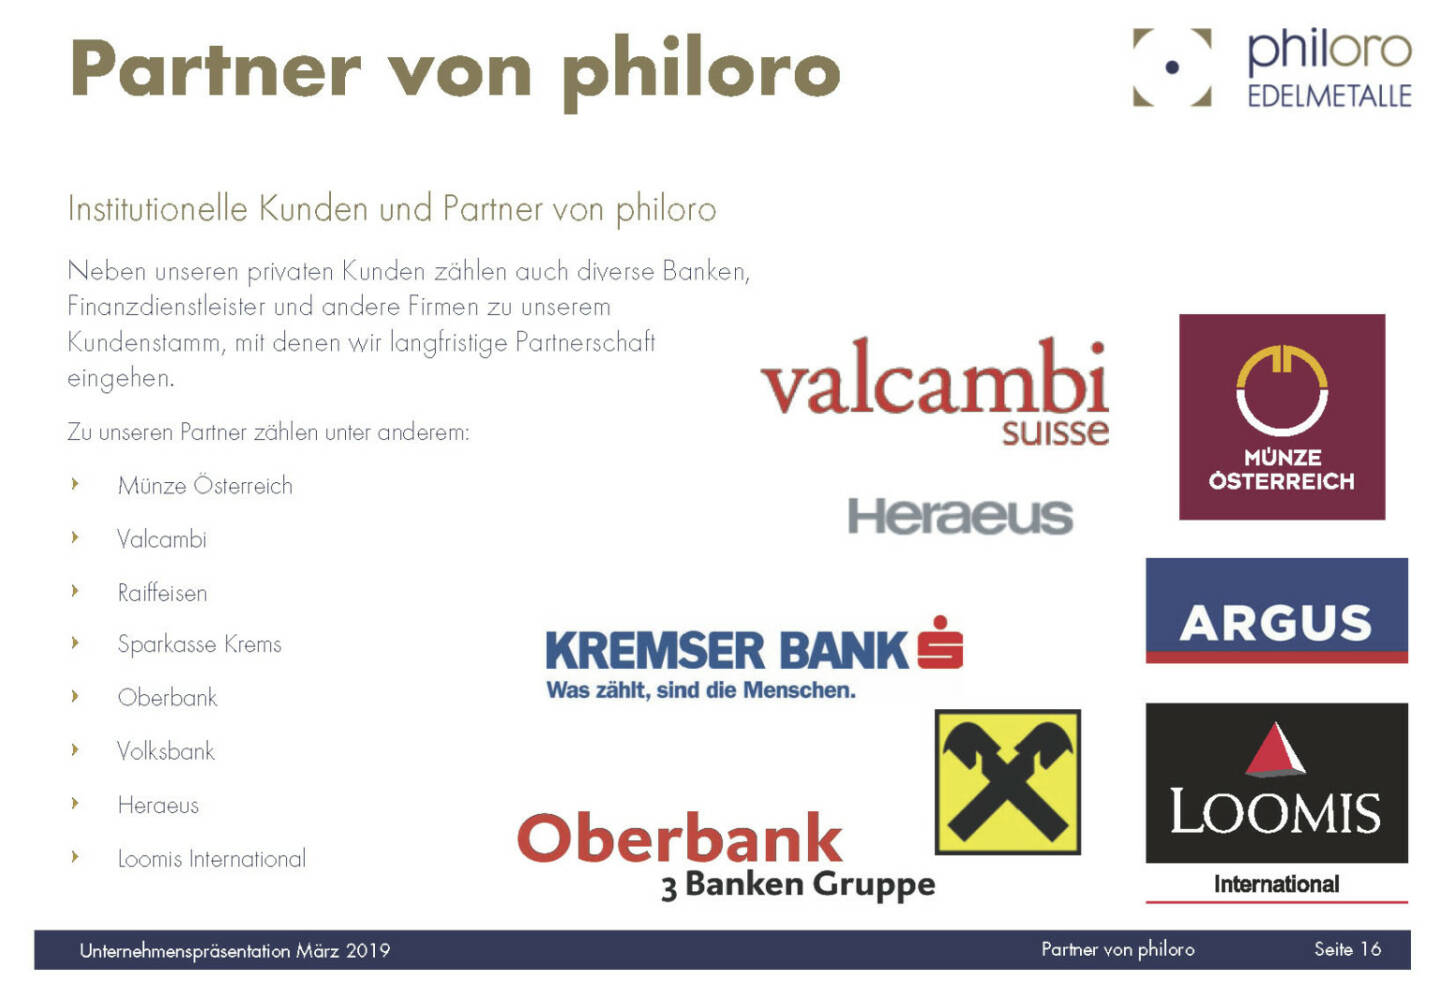 Philoro - Partner von philoro